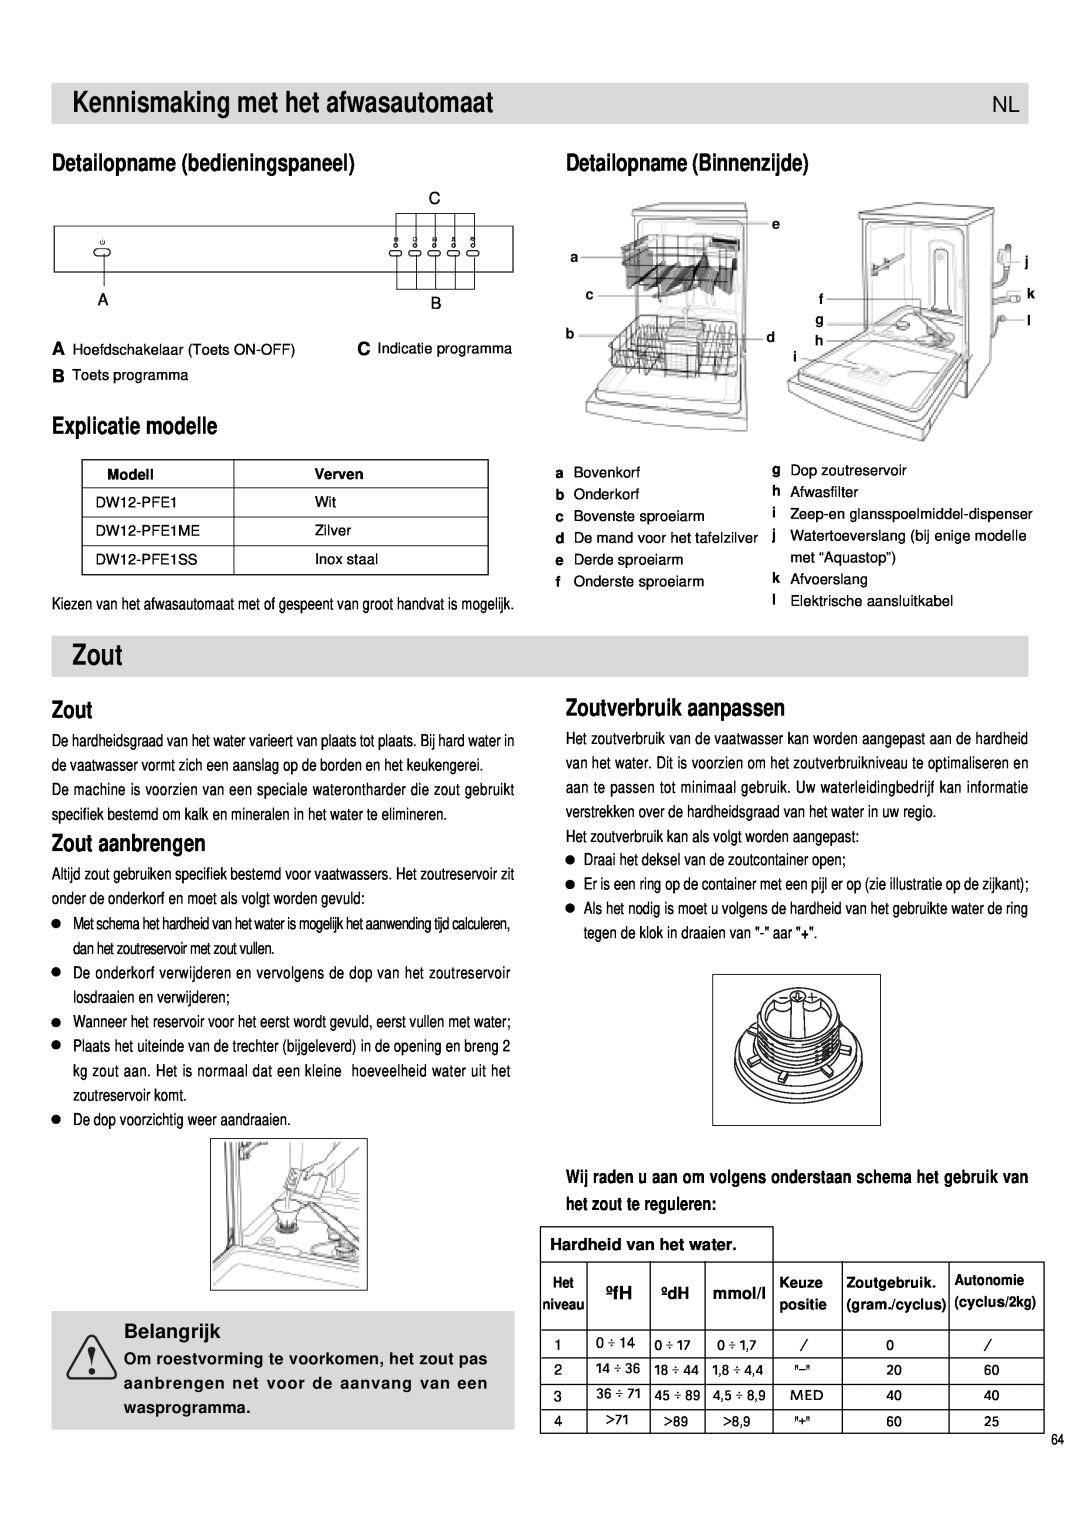 Haier DW12-PFE1 S Kennismaking met het afwasautomaat, Zout, Detailopname bedieningspaneel, Explicatie modelle, Belangrijk 